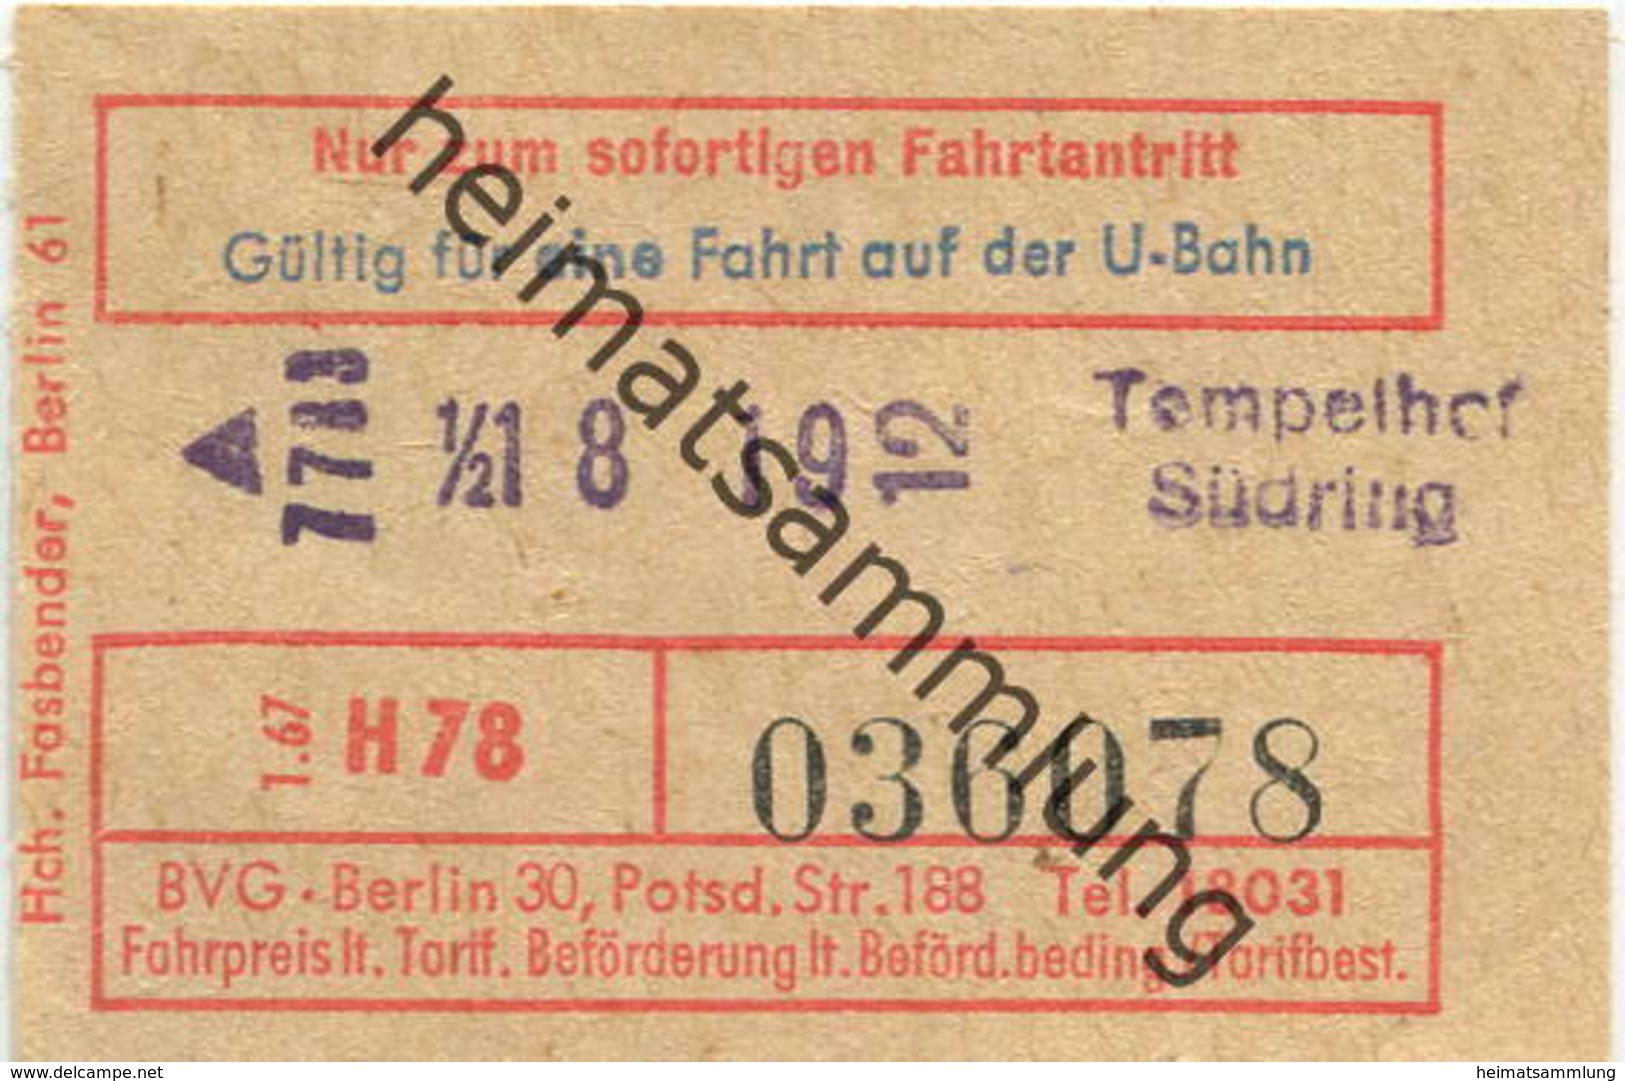 Deutschland - Berlin - Gültig Für Eine Fahrt Auf Der U-Bahn - Fahrschein 1967 - Tempelhof Südring - Europe